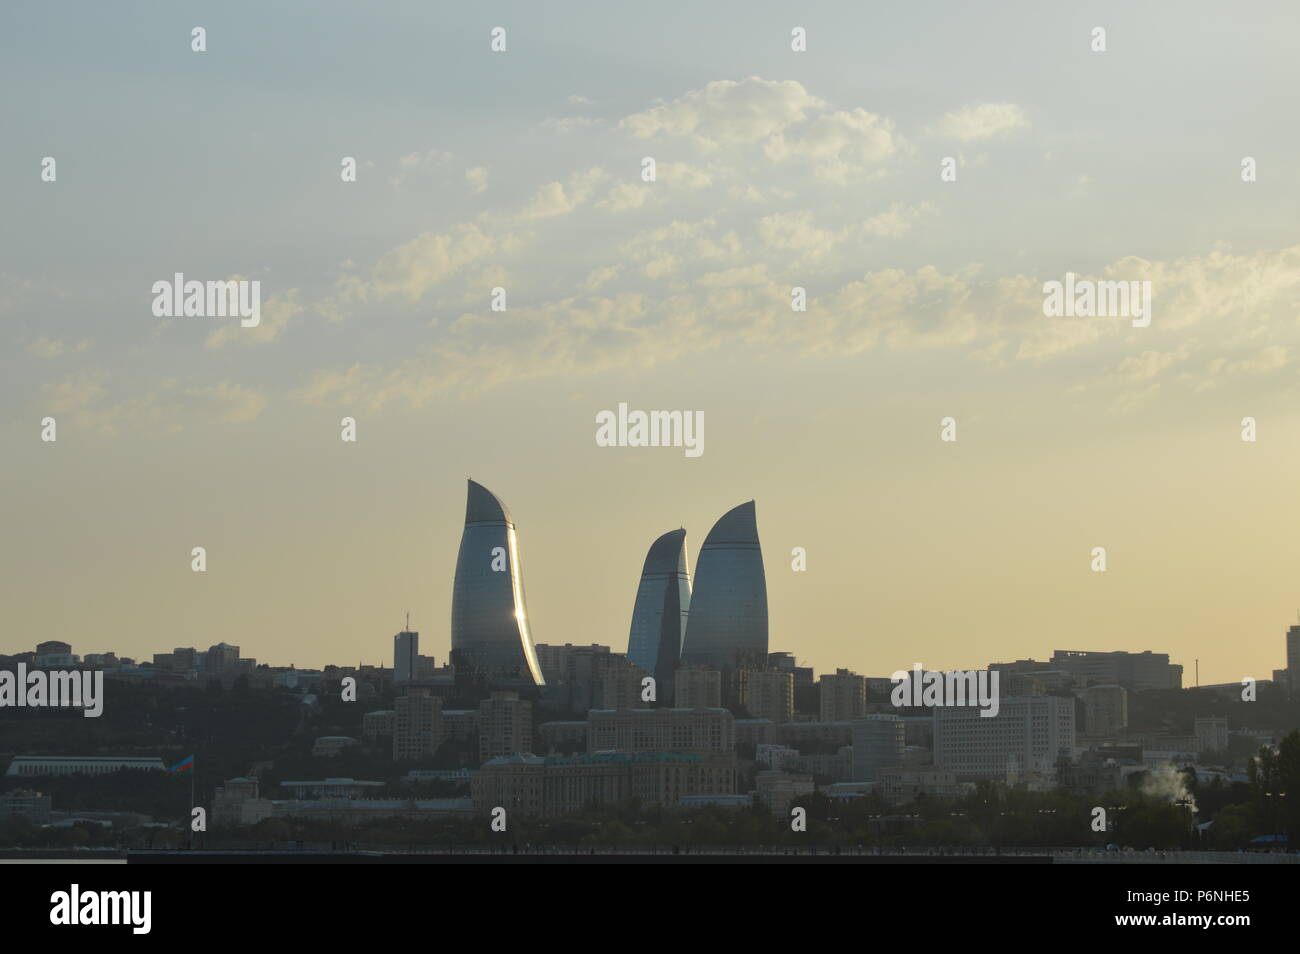 Brennende Türme von Baku, Aserbaidschan. Von Nikon während meiner ersten Reise nach Baku im Sommer 2015 übernommen. Reisen Fotografie in Baku. Stockfoto